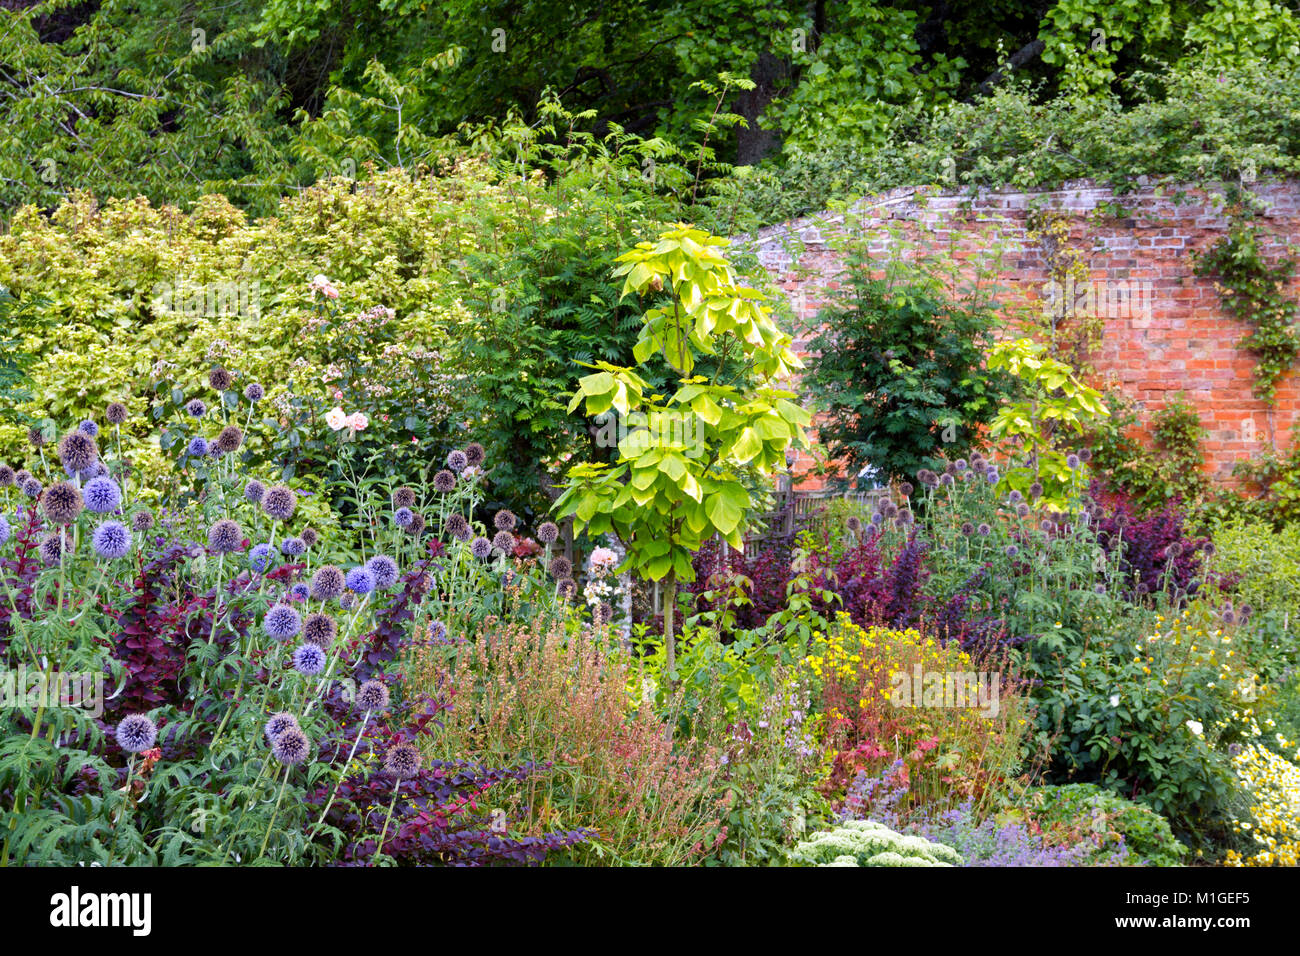 Colouful summer garden border in a walled garden Stock Photo